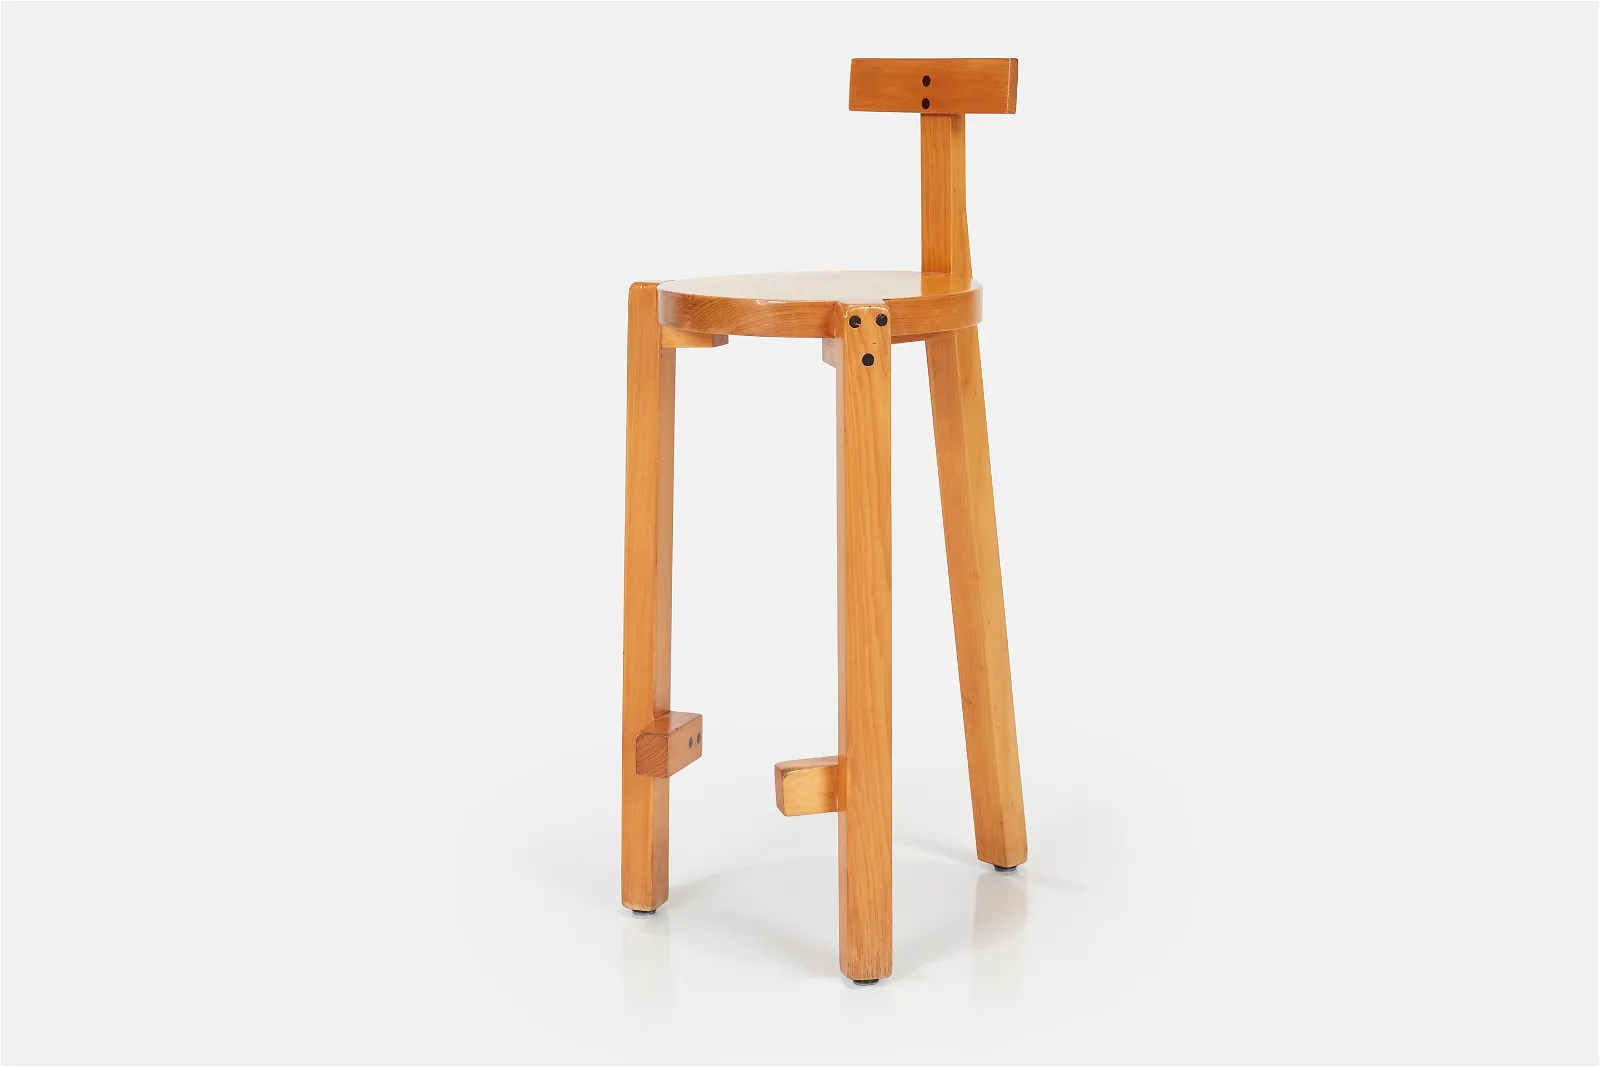 A-rare-‘Girafa-chair-designed-by-Lino-Bo-Bardi-Marcelo-Ferraz-and-Marcelo-Suzuki-in-1986-for-Casa-do-Benin-Salvador-de-Bahia-1